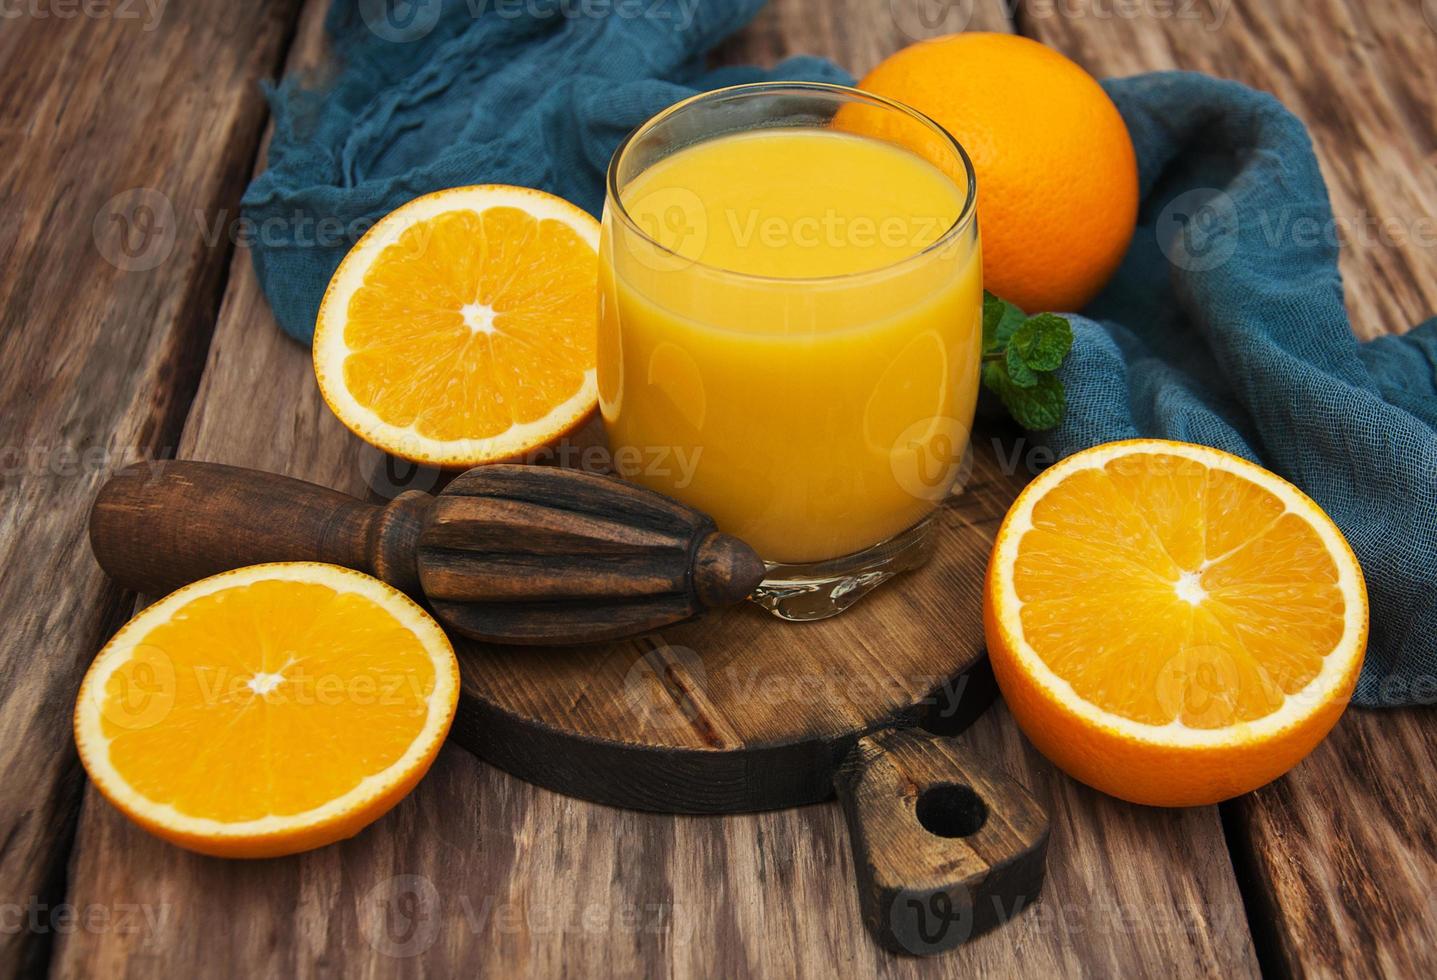 copo de sumo de laranja foto